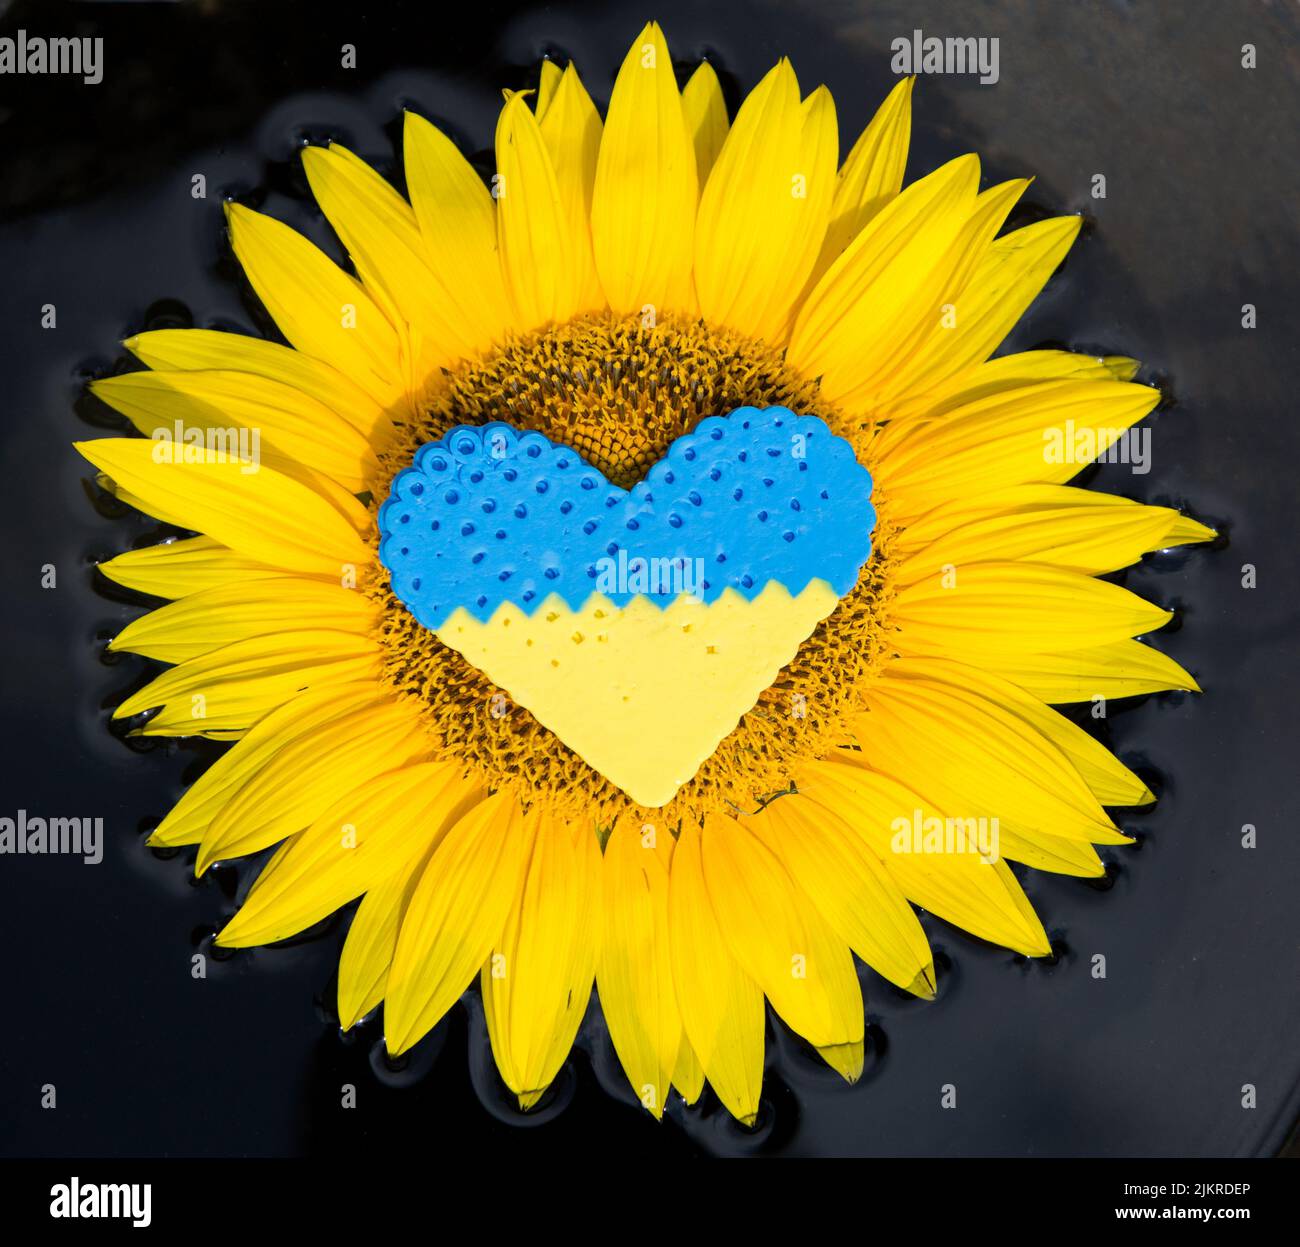 coeur jaune-bleu se trouve au centre de la fleur de tournesol. Image artistique des blessures dans les coeurs des Ukrainiens souffrant de la guerre dans leur patrie. Douleur, frais Banque D'Images